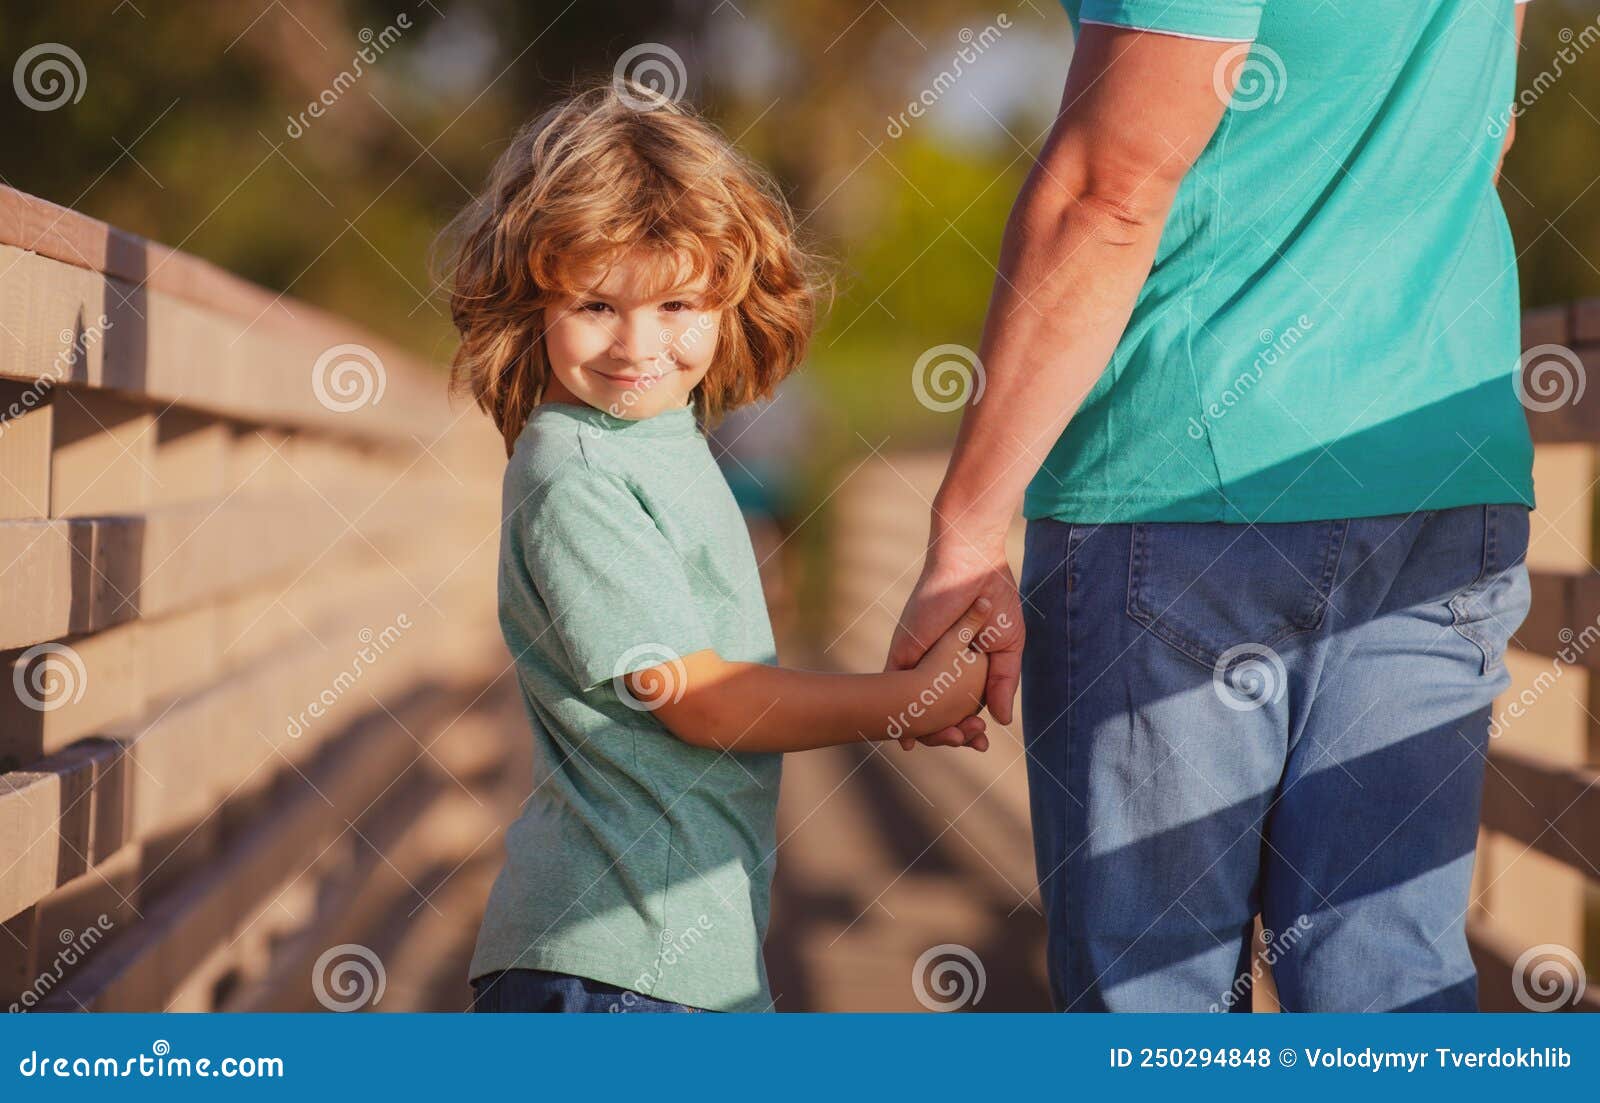 一个小男孩伸出手来，表明他的手 库存照片. 图片 包括有 执行, 男朋友, 照亮, 户内, 表面, 头发 - 182096526